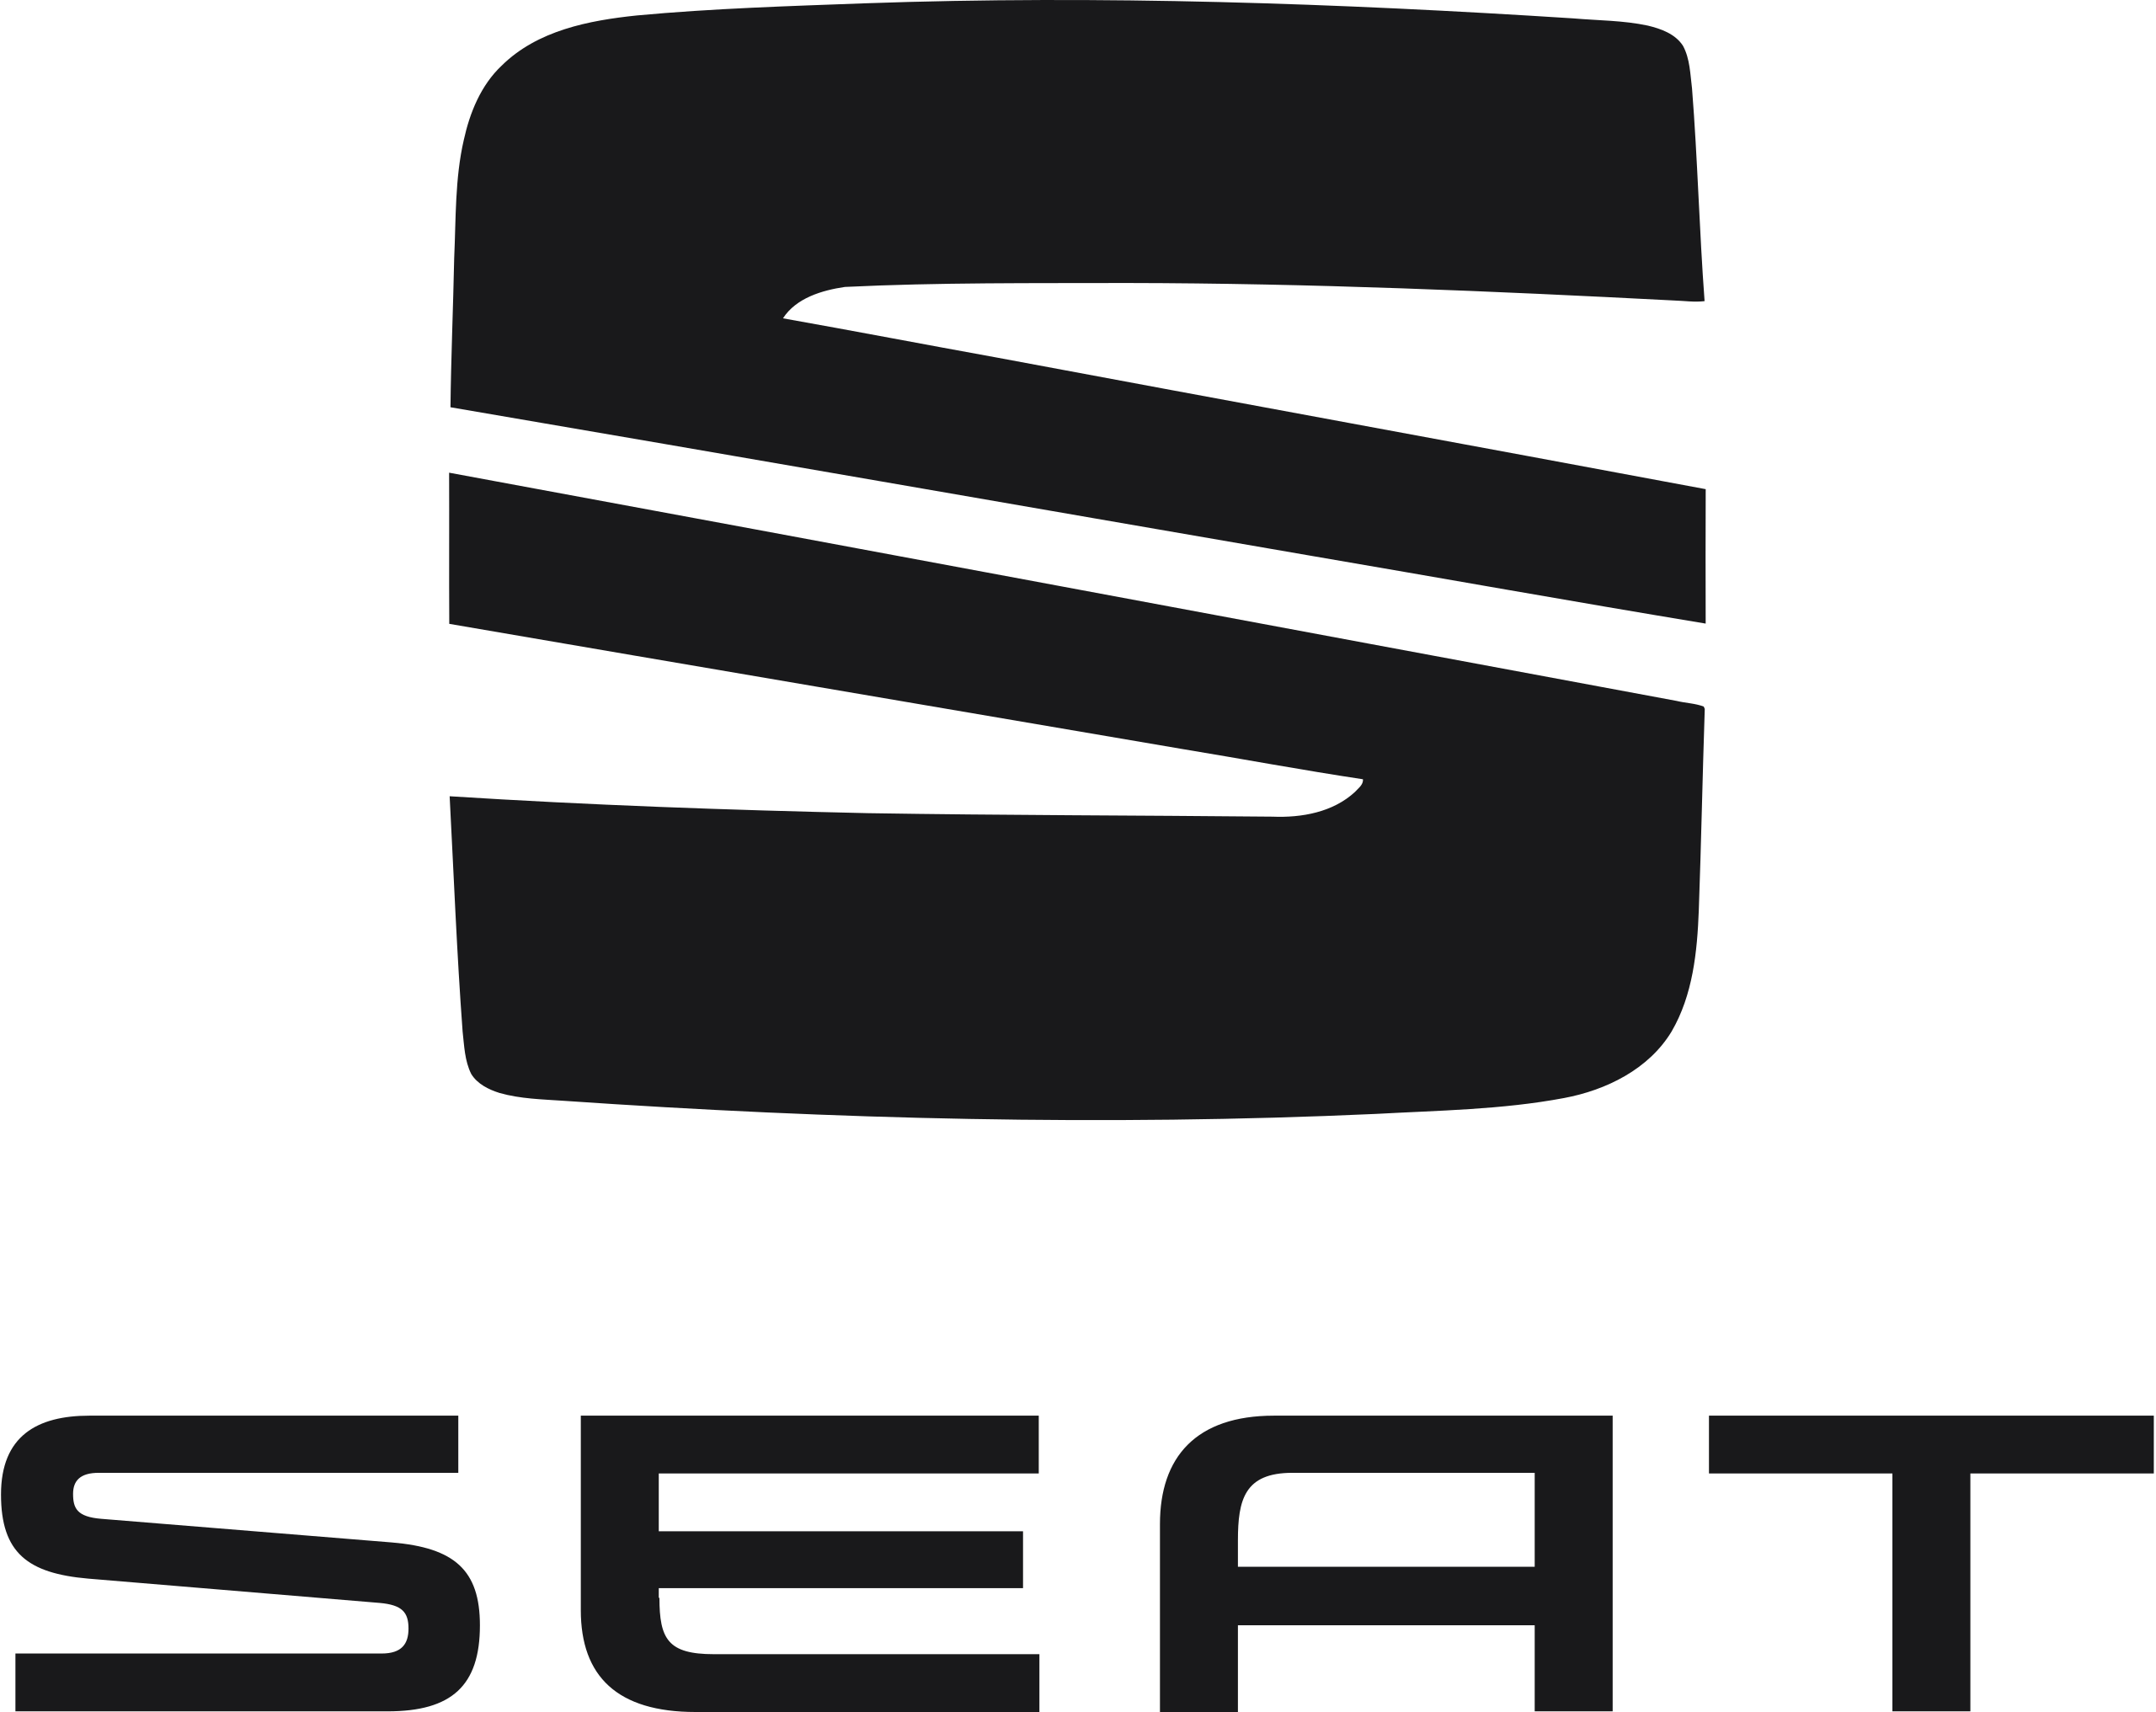 Seat_logo